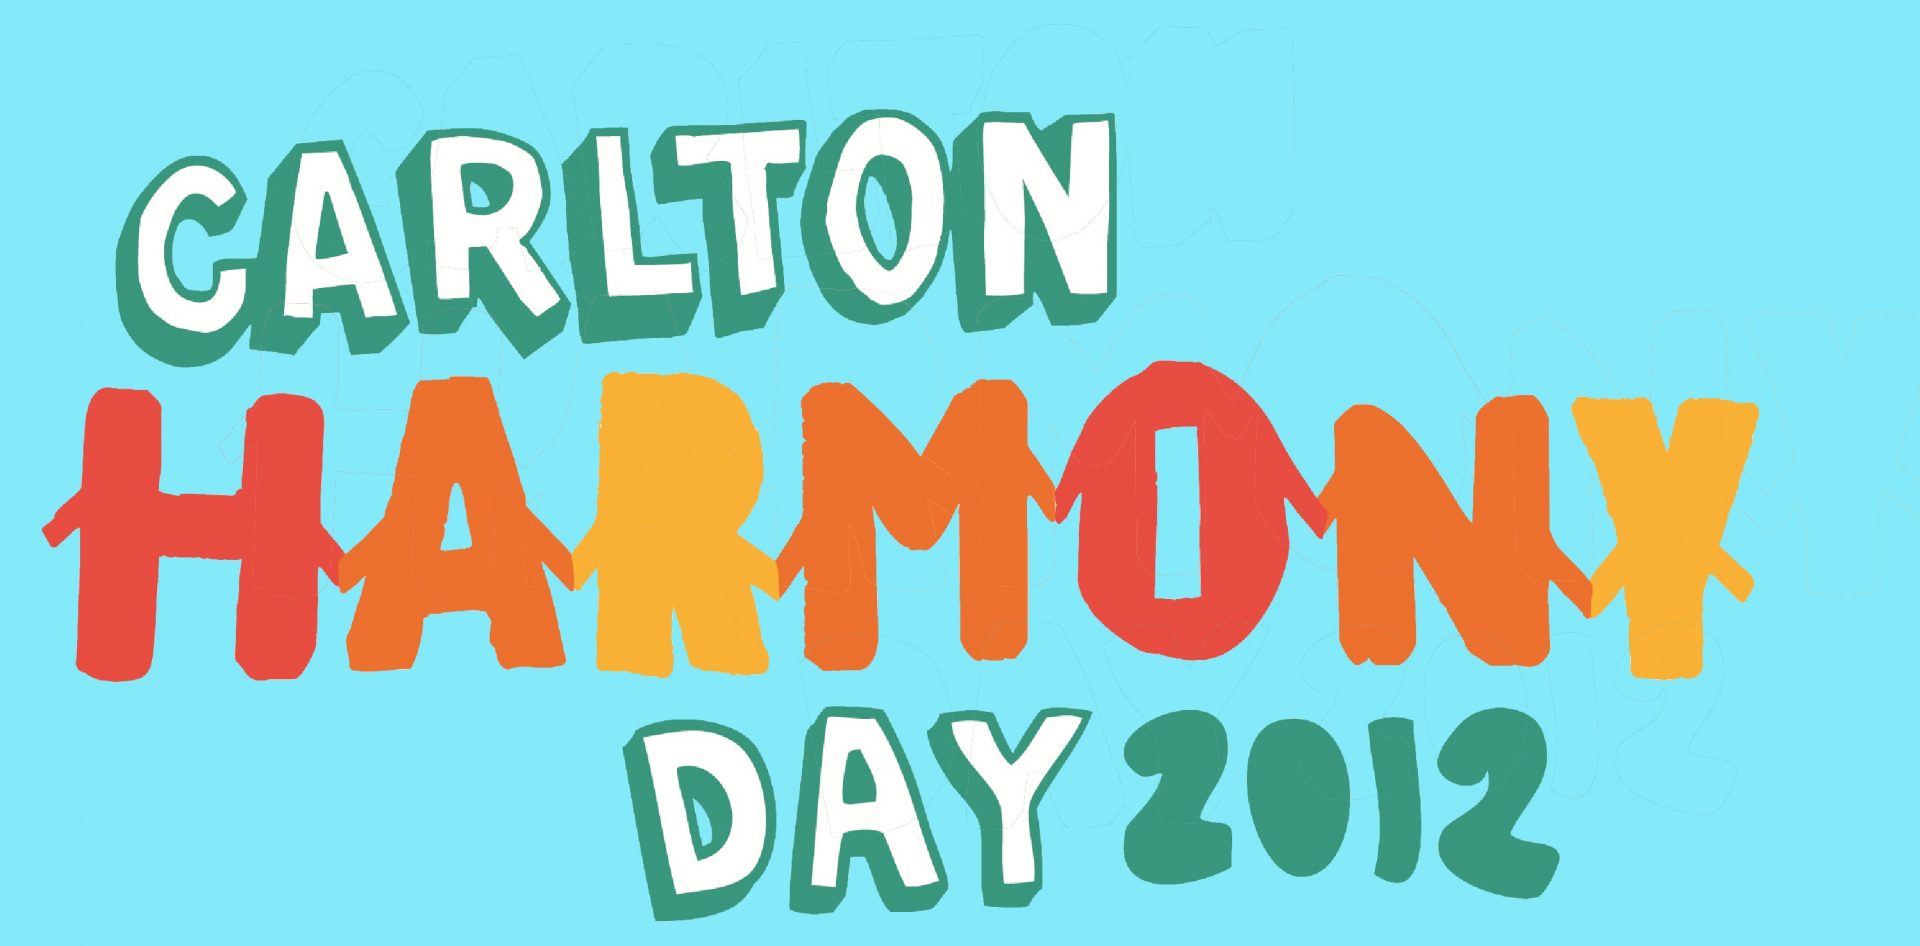 Carlton Harmony Day 2012